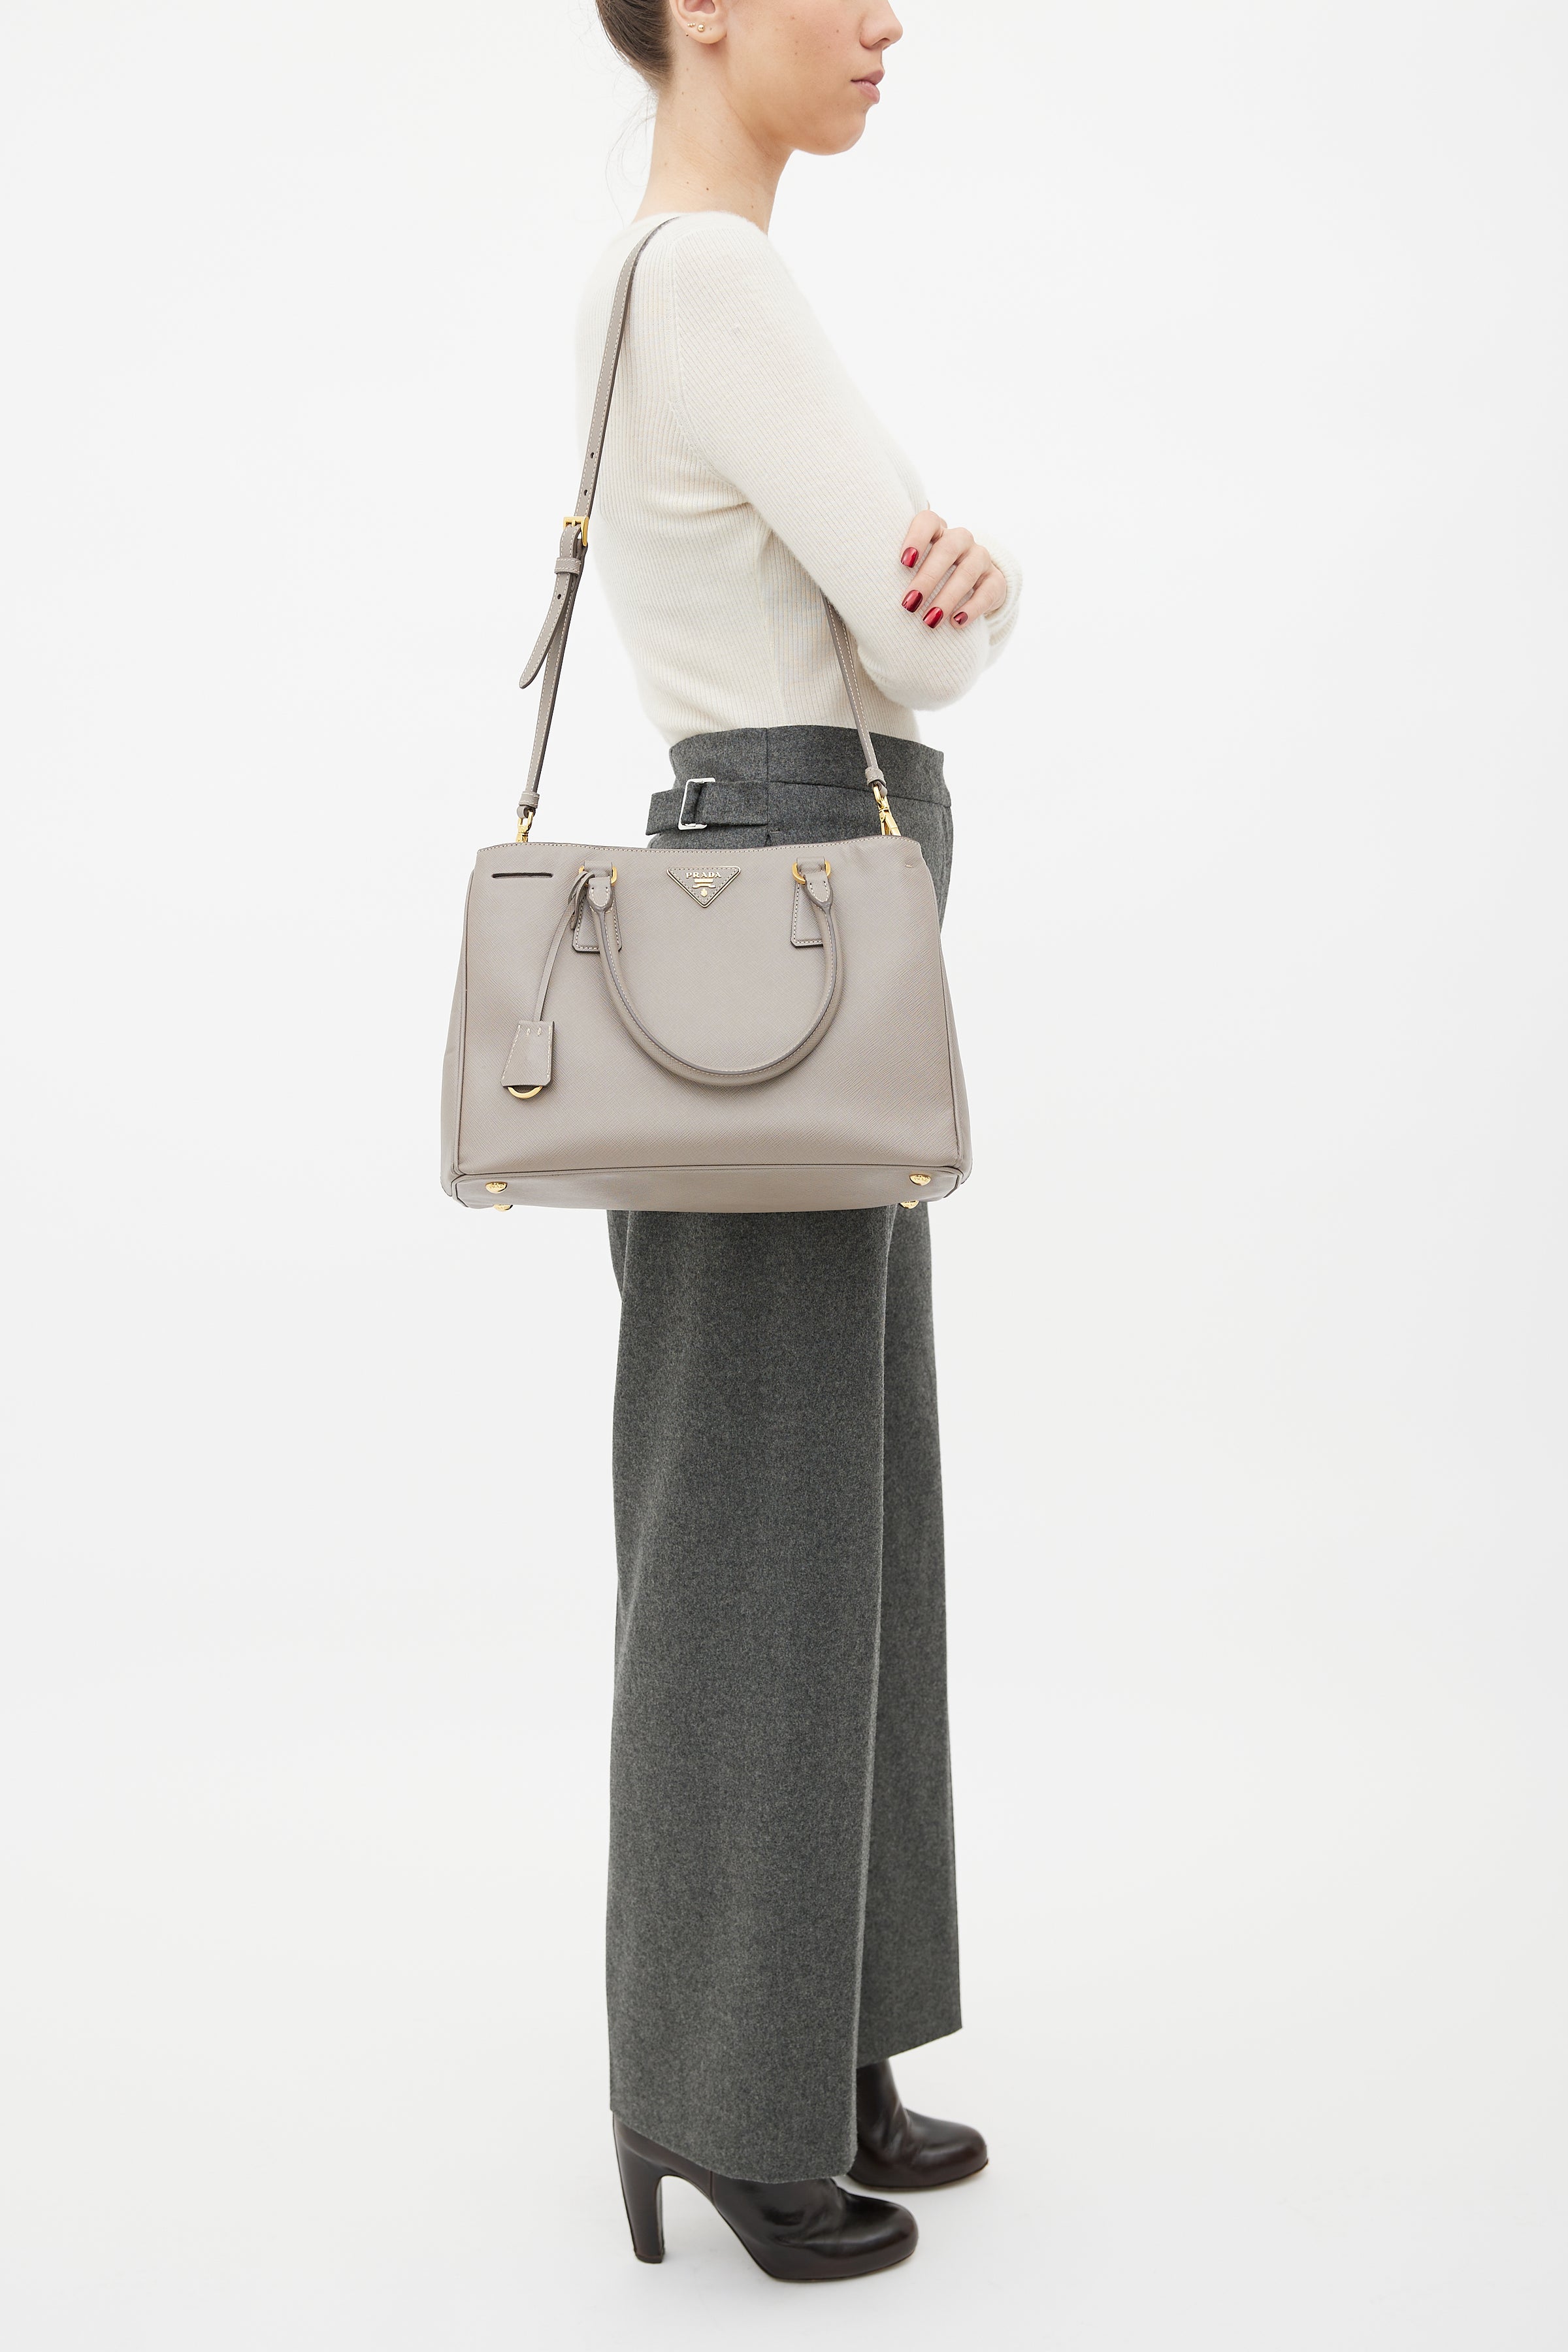 Prada // Grey Galleria Small Saffiano Leather Bag – VSP Consignment